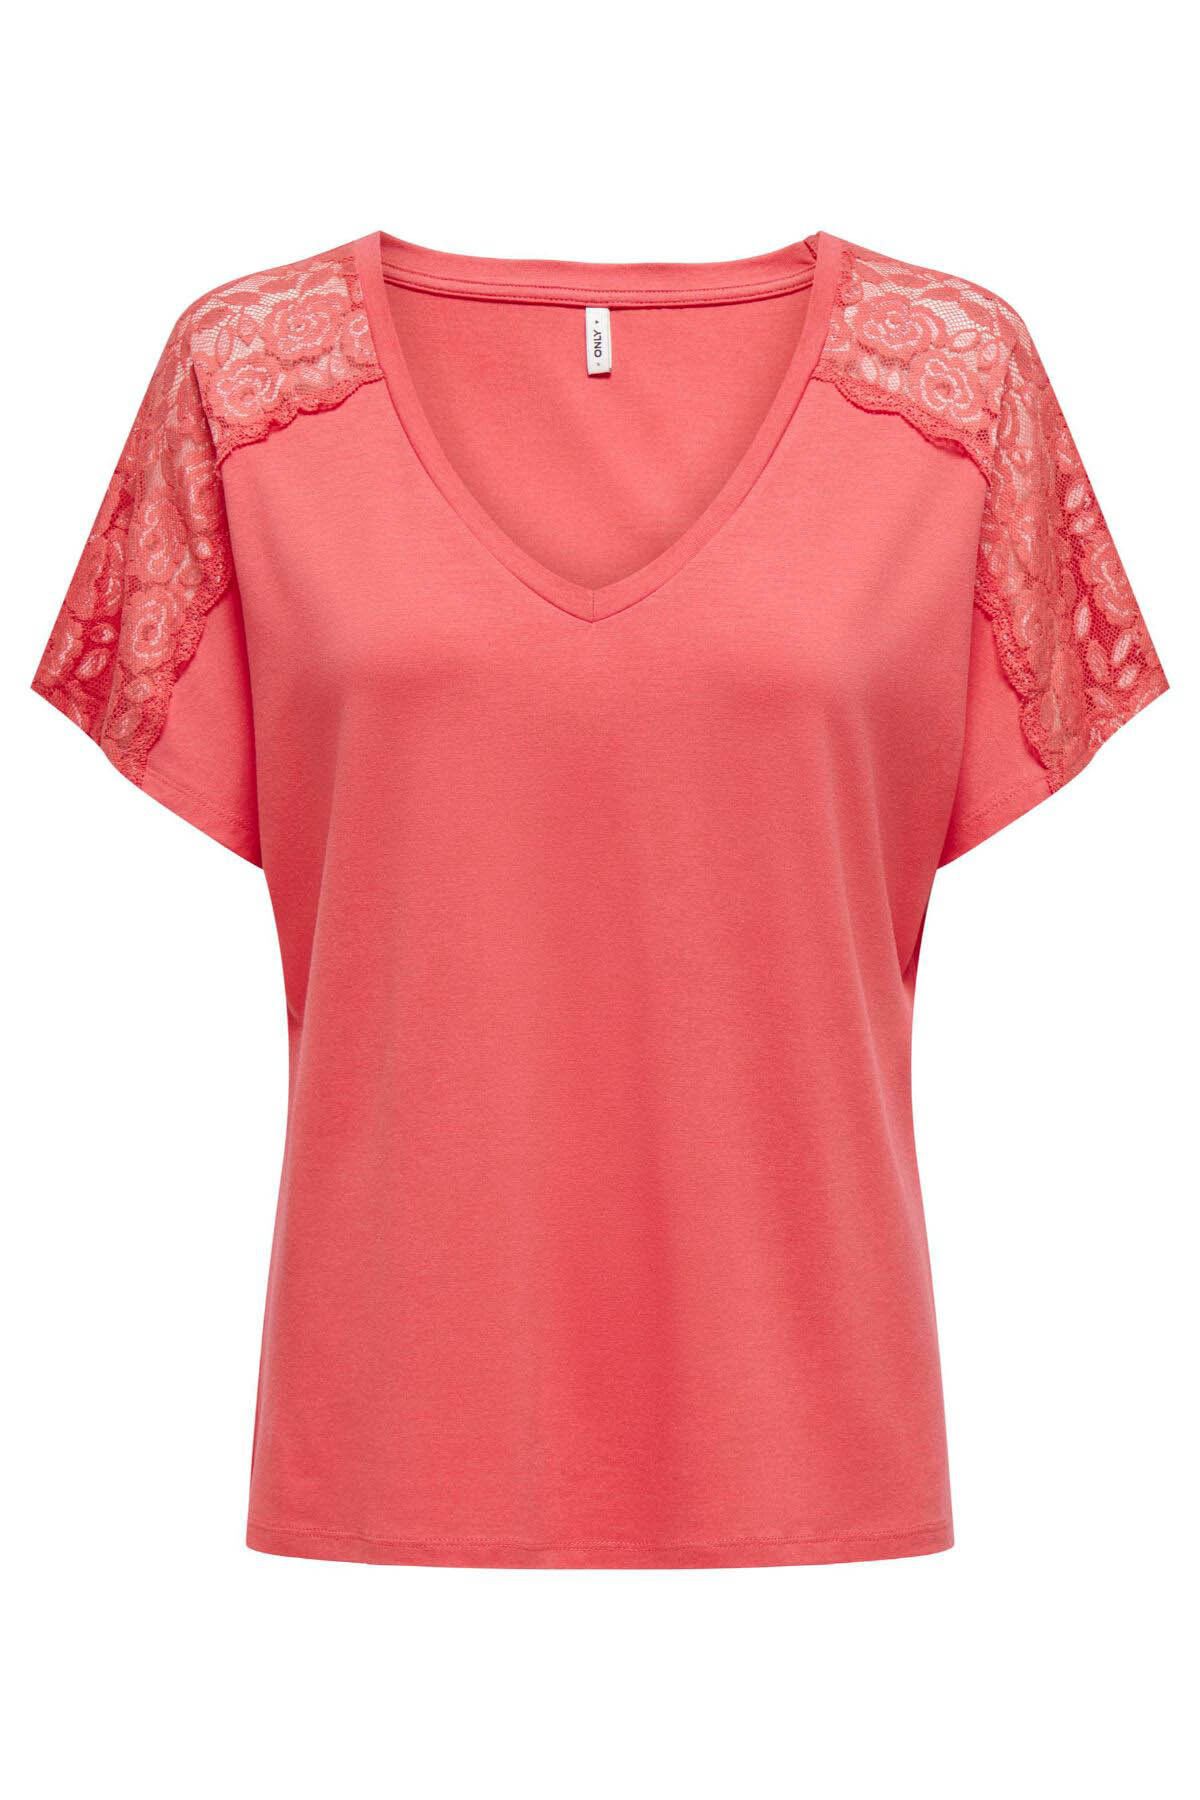 Only Kadın T-shirt Gül 15302877 Onlmoster S/s V-neck Lace Top Jrs